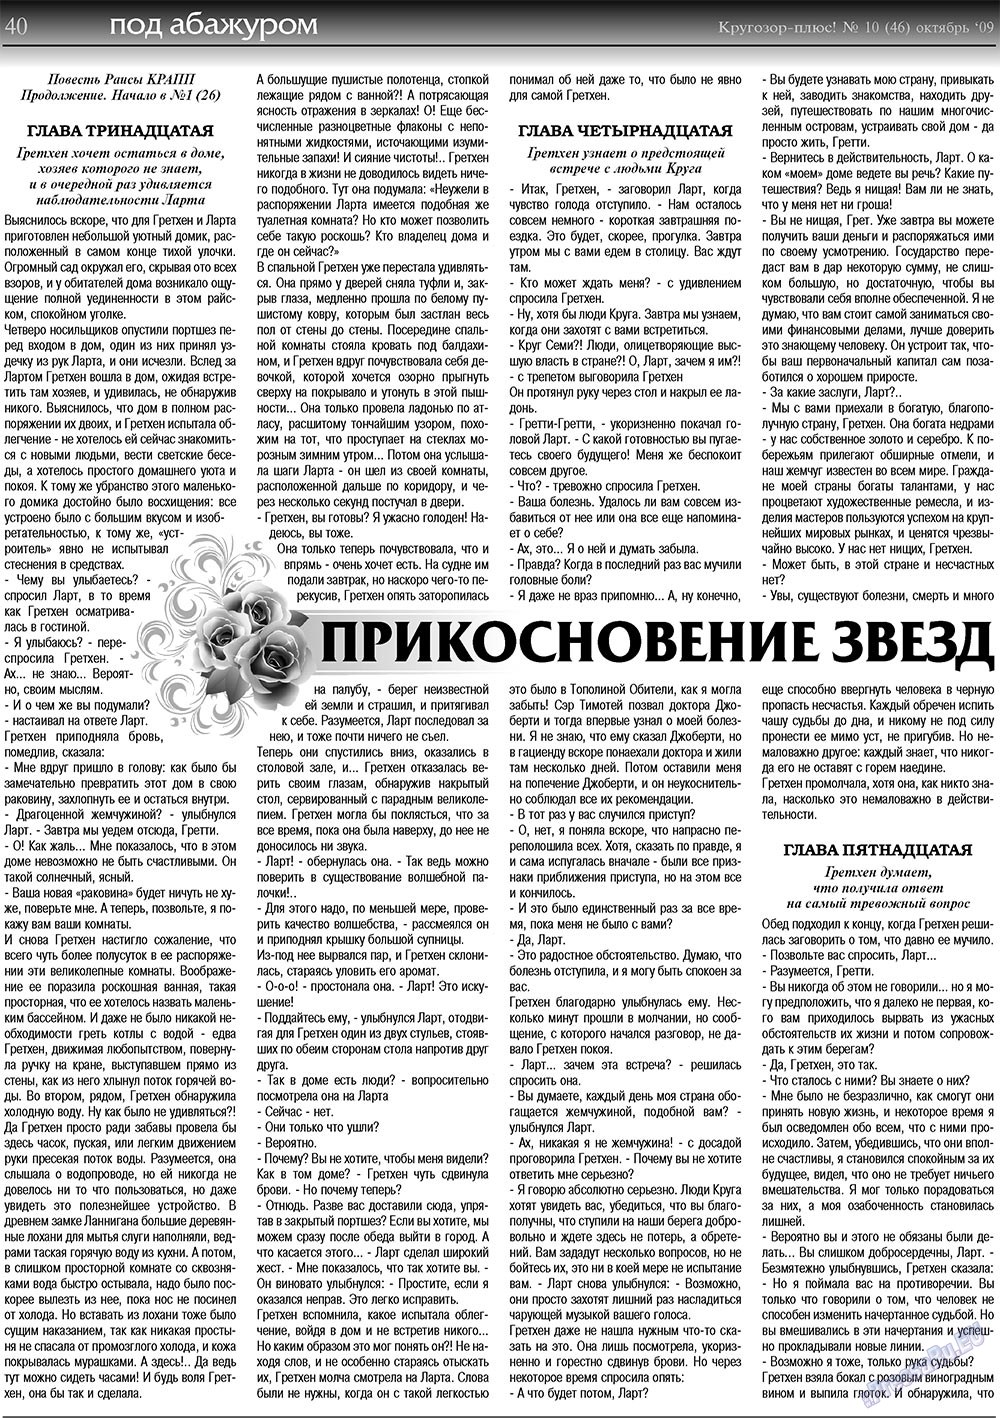 Кругозор плюс!, газета. 2009 №10 стр.40